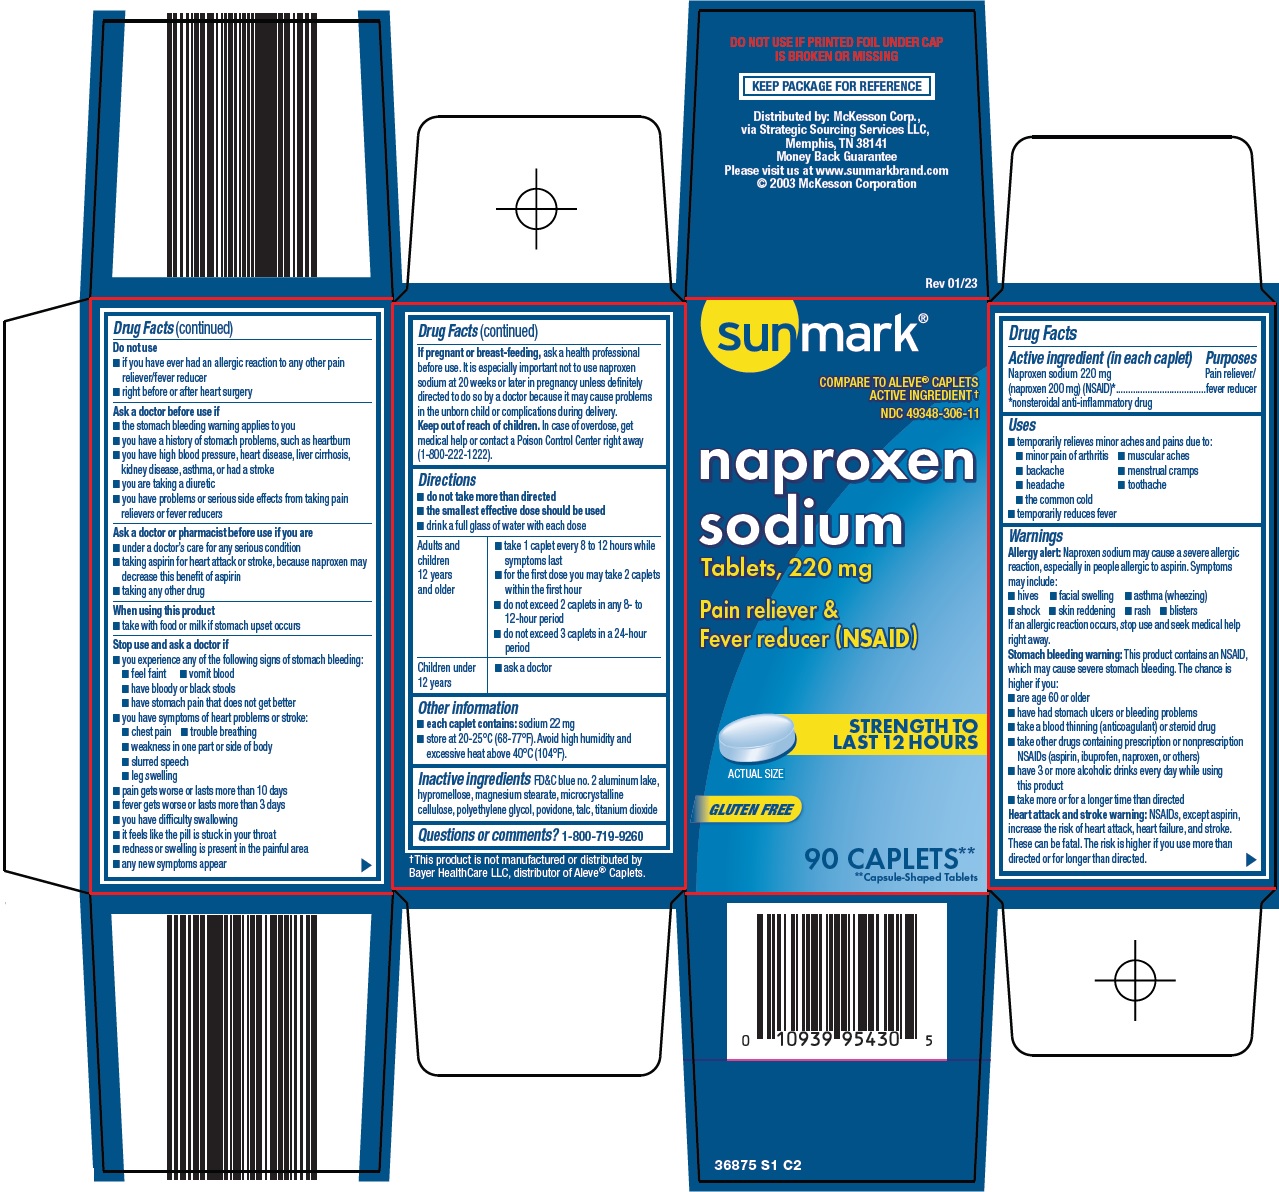 Naproxen Sodium Tablets, 220 mg Carton